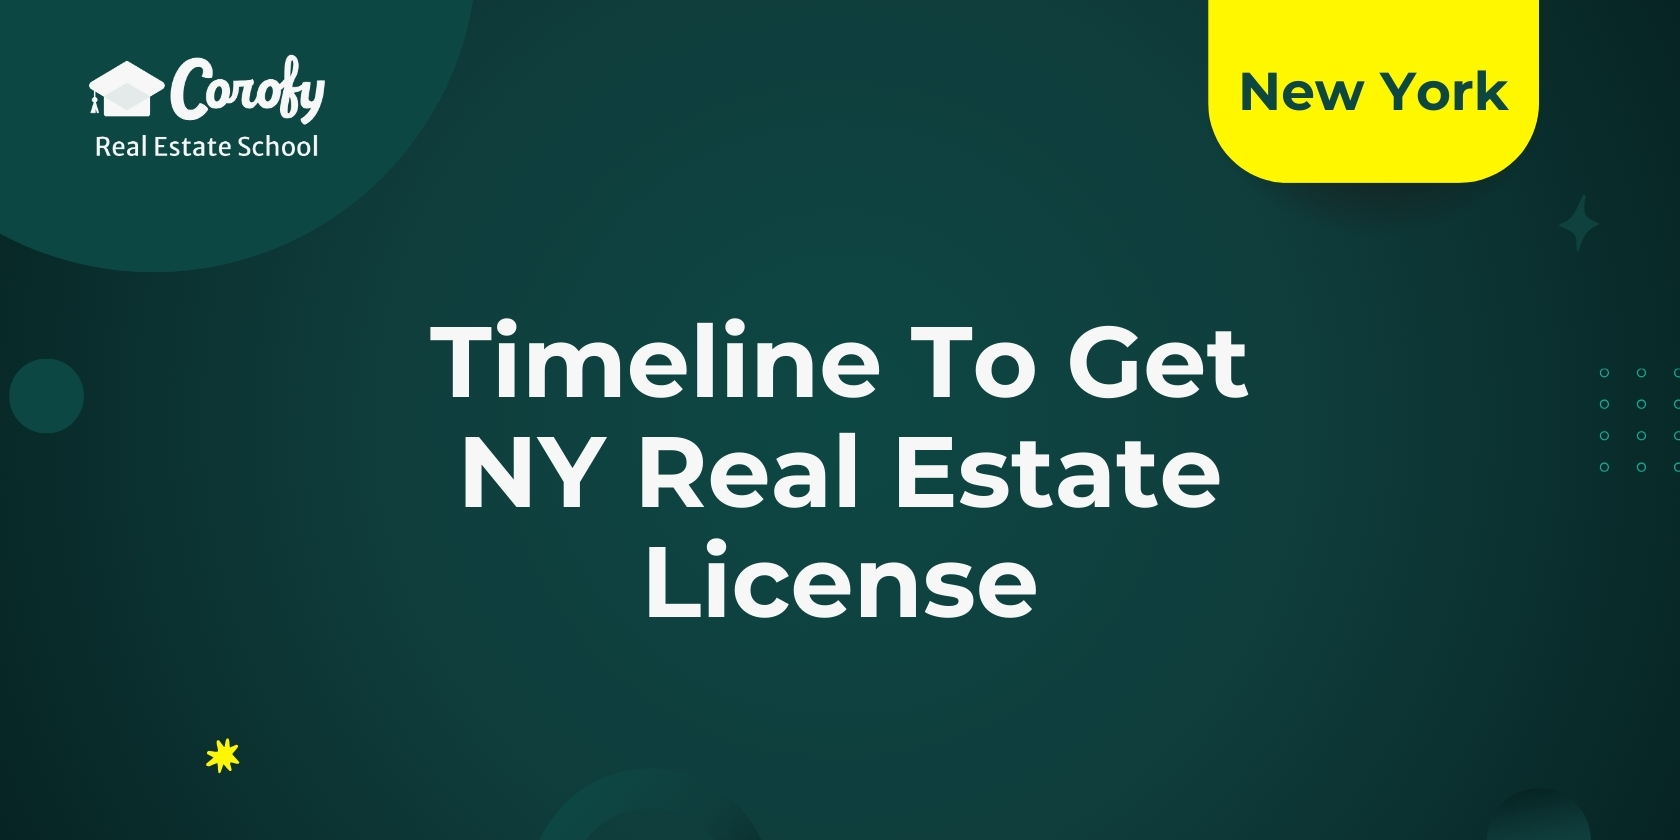 Timeline To Get NY Real Estate License